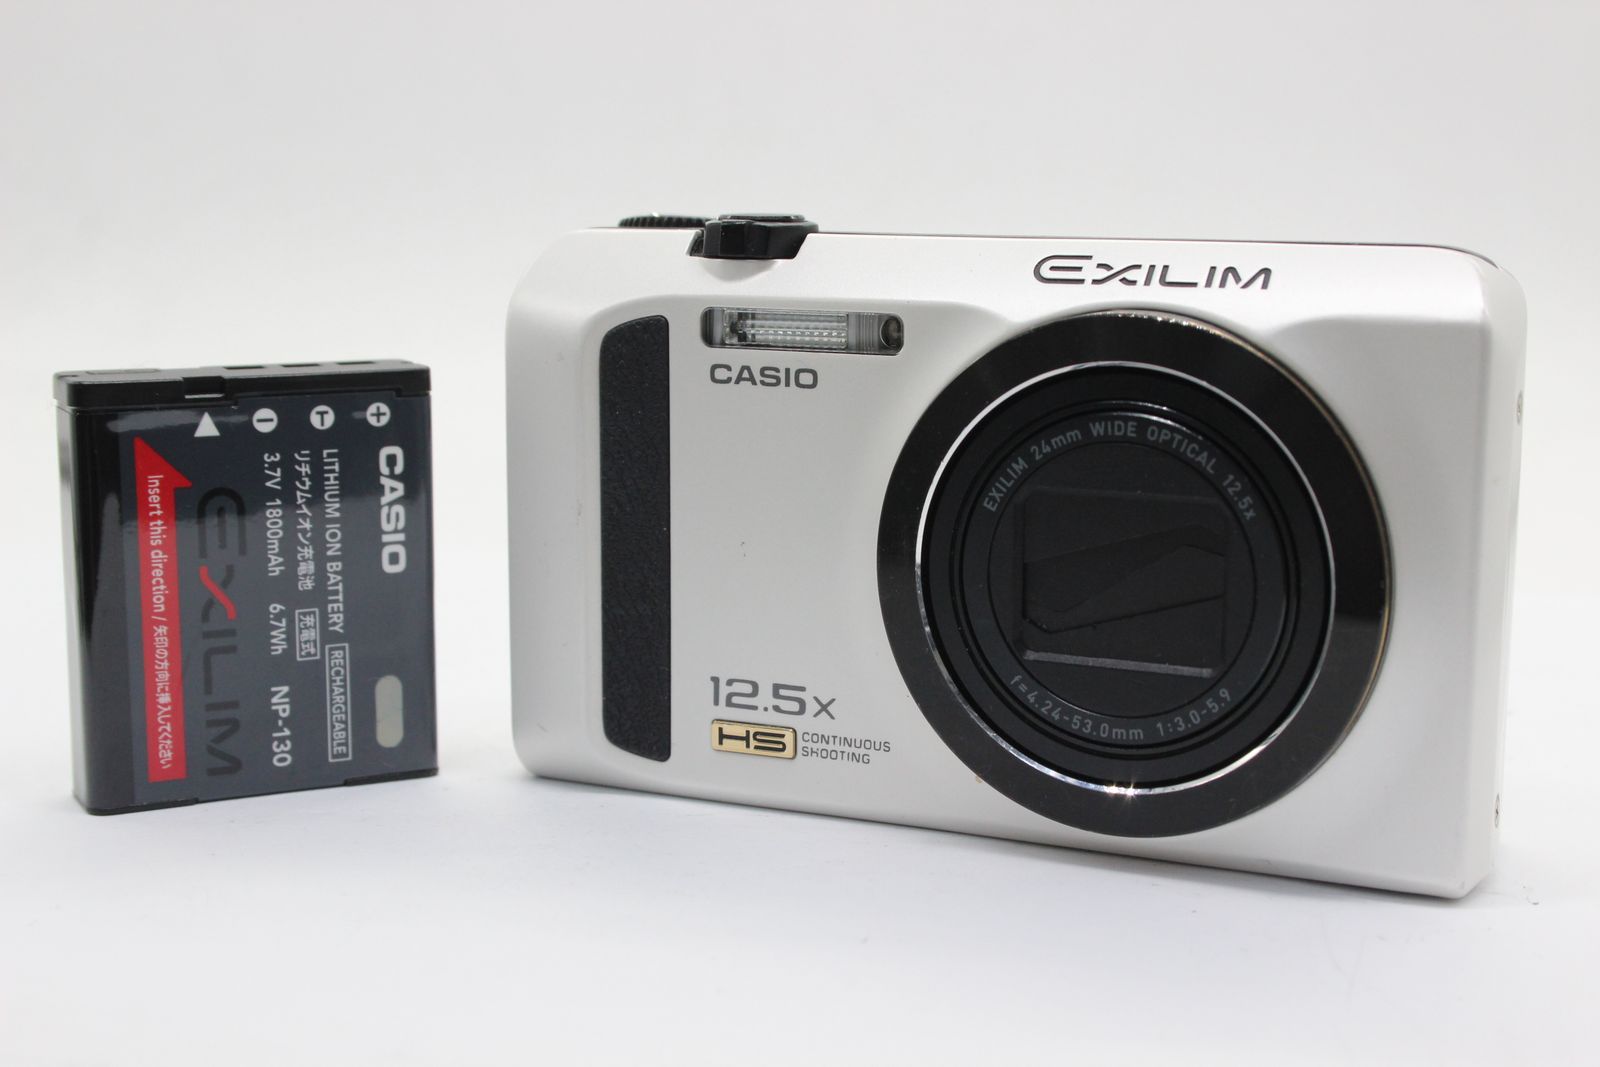 返品保証】 カシオ Casio Exilim EX-ZR300 ホワイト 24mm Wide 12.5x